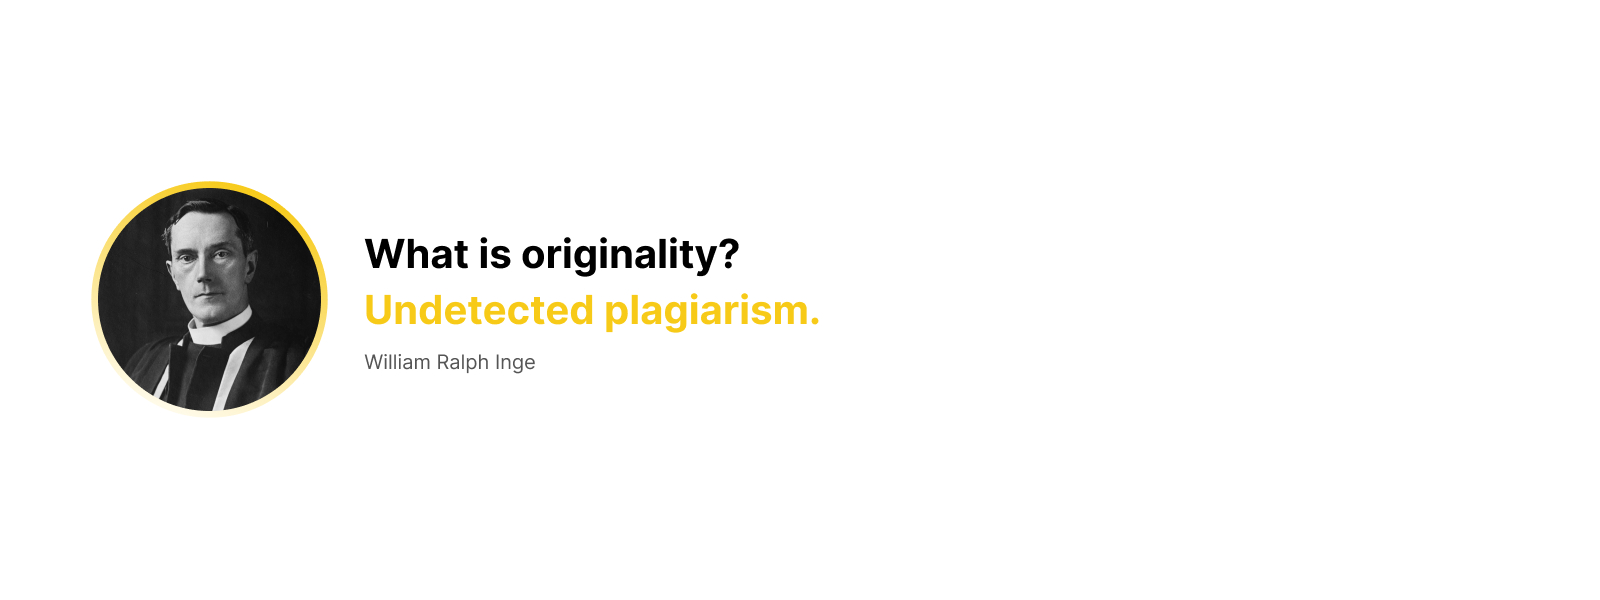 Creativity or plagiarism